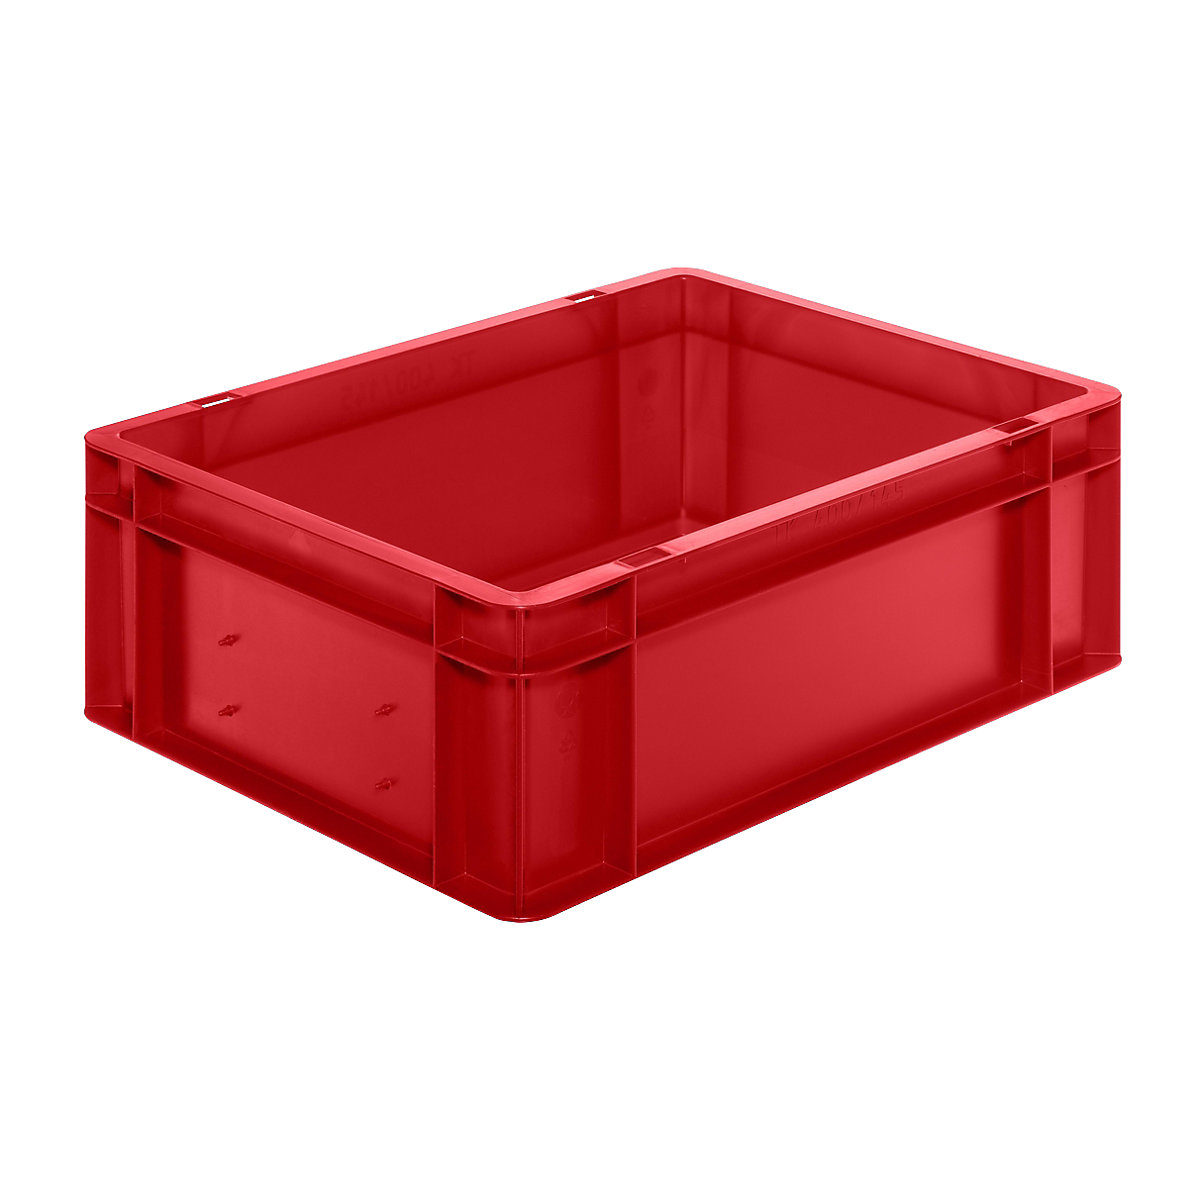 Spremnik za slaganje u EURO formatu, zatvorene stijenke i dno, DxŠxV 400 x 300 x 145 mm, u crvenoj boji, pak. 5 kom.